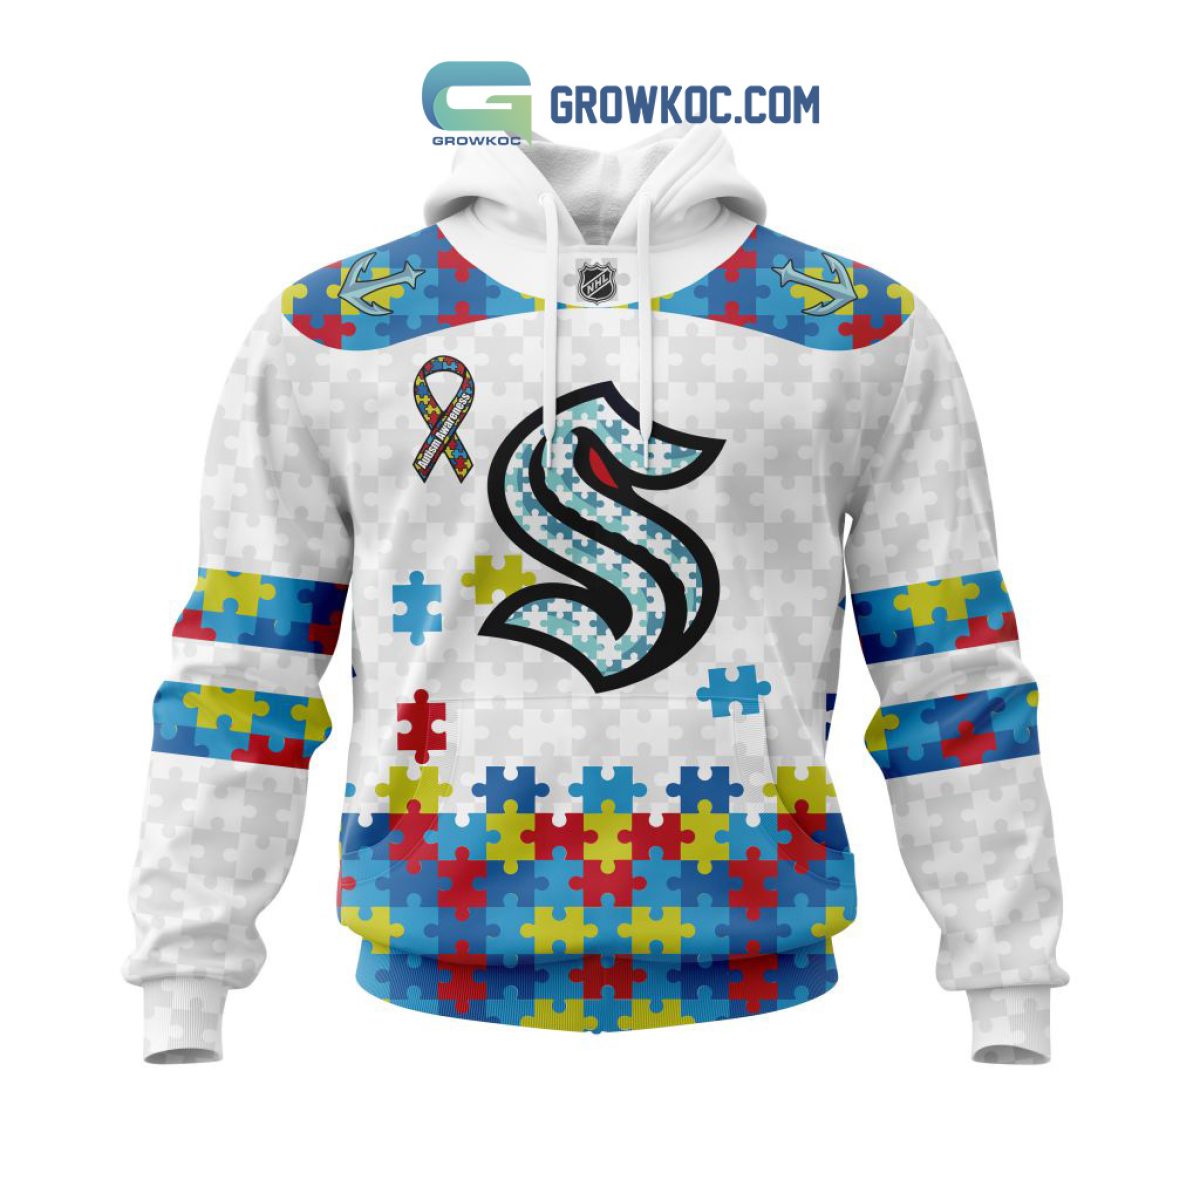 NHL Seattle Kraken Mix Jersey Custom Personalized Hoodie T Shirt Sweatshirt  - Growkoc